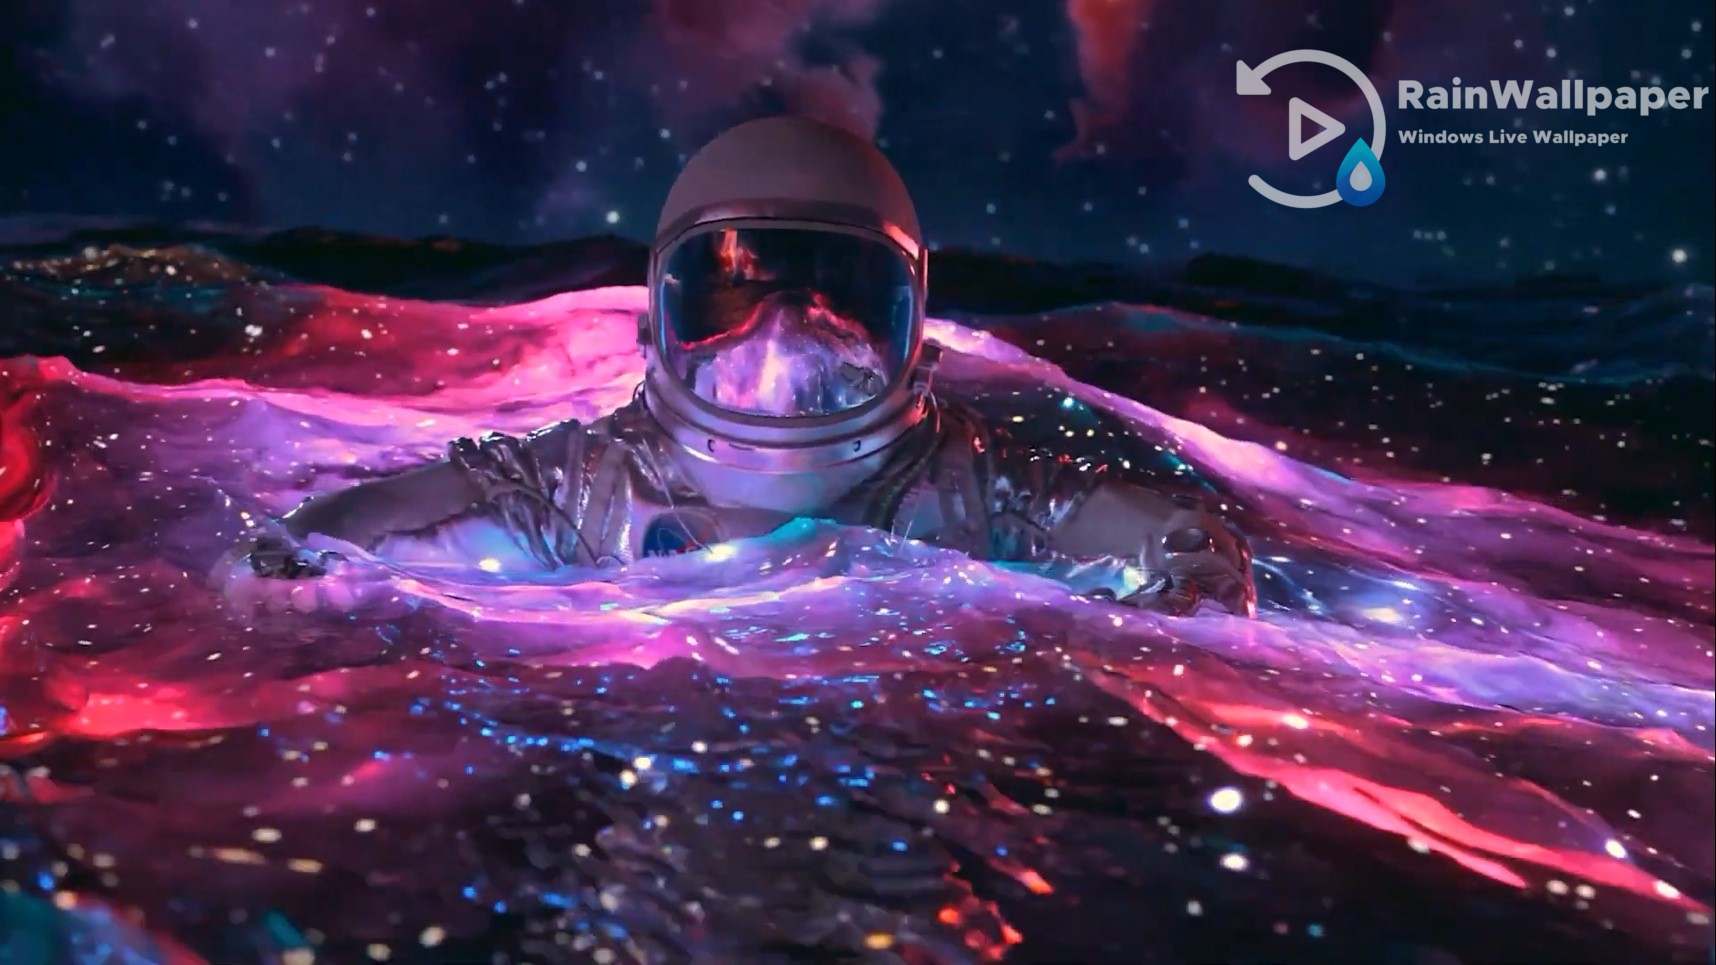 Astronaut In The Ocean Wallpapers